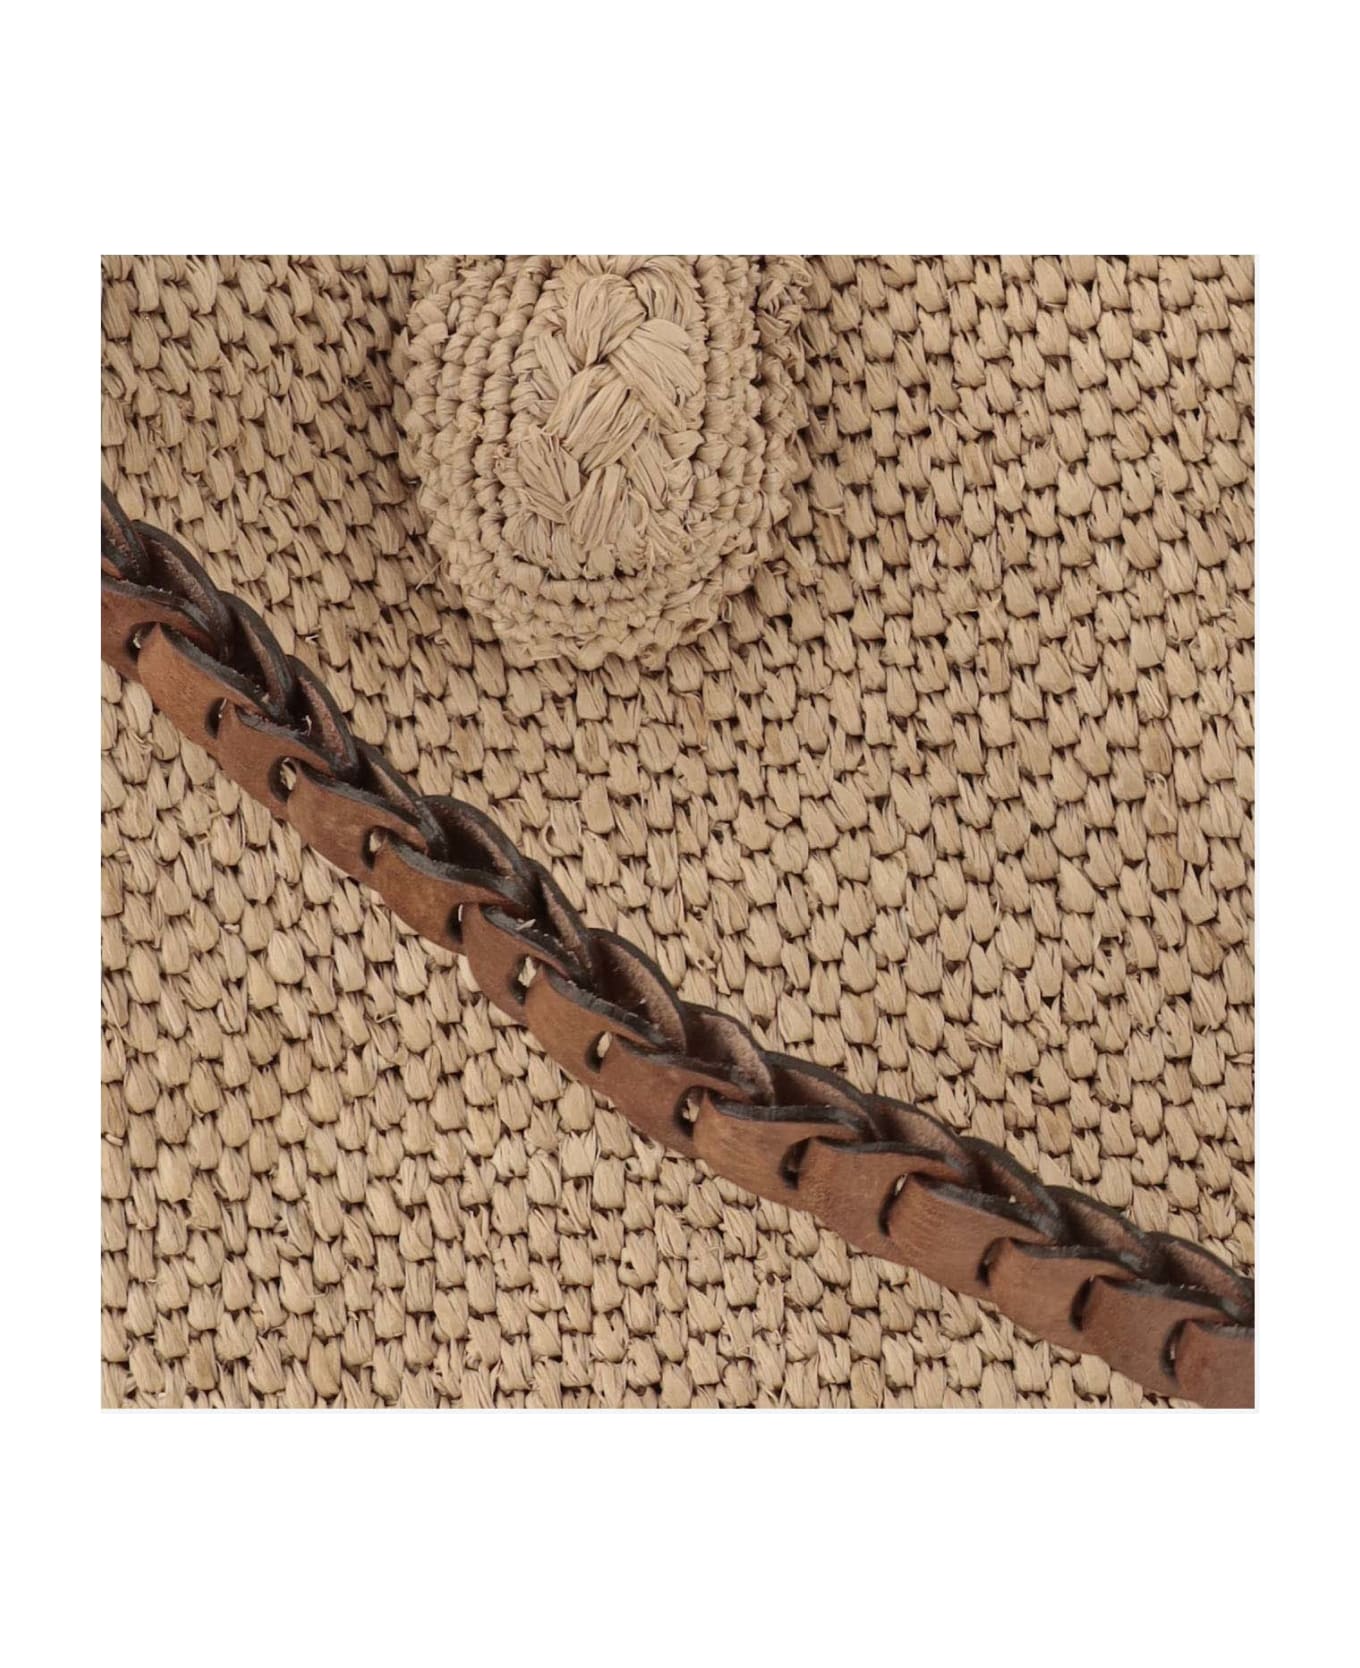 Ibeliv Raffia Bag With Leather Details - TEA